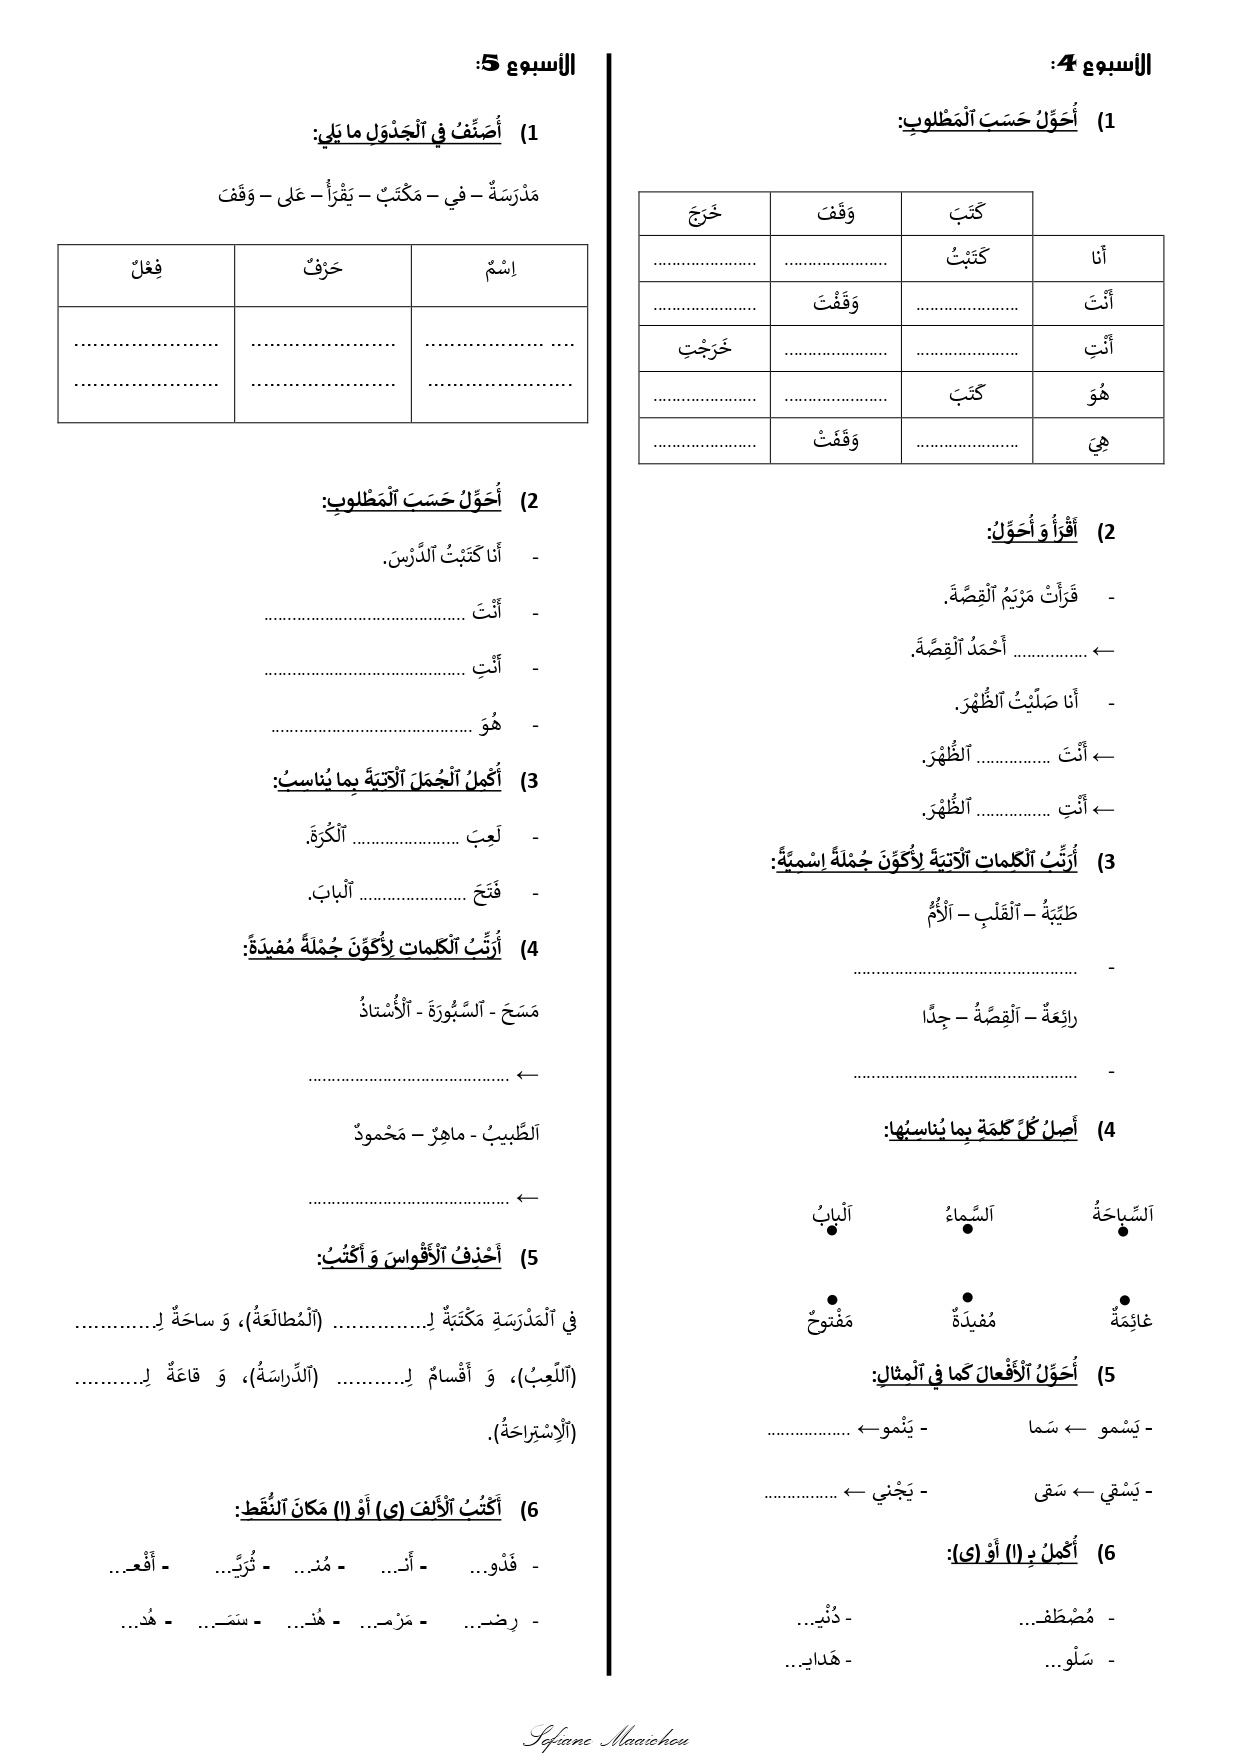 تمارين كتابية لجميع الوحدات في مادة اللغة العربية للمستوى الثالث ابتدائي